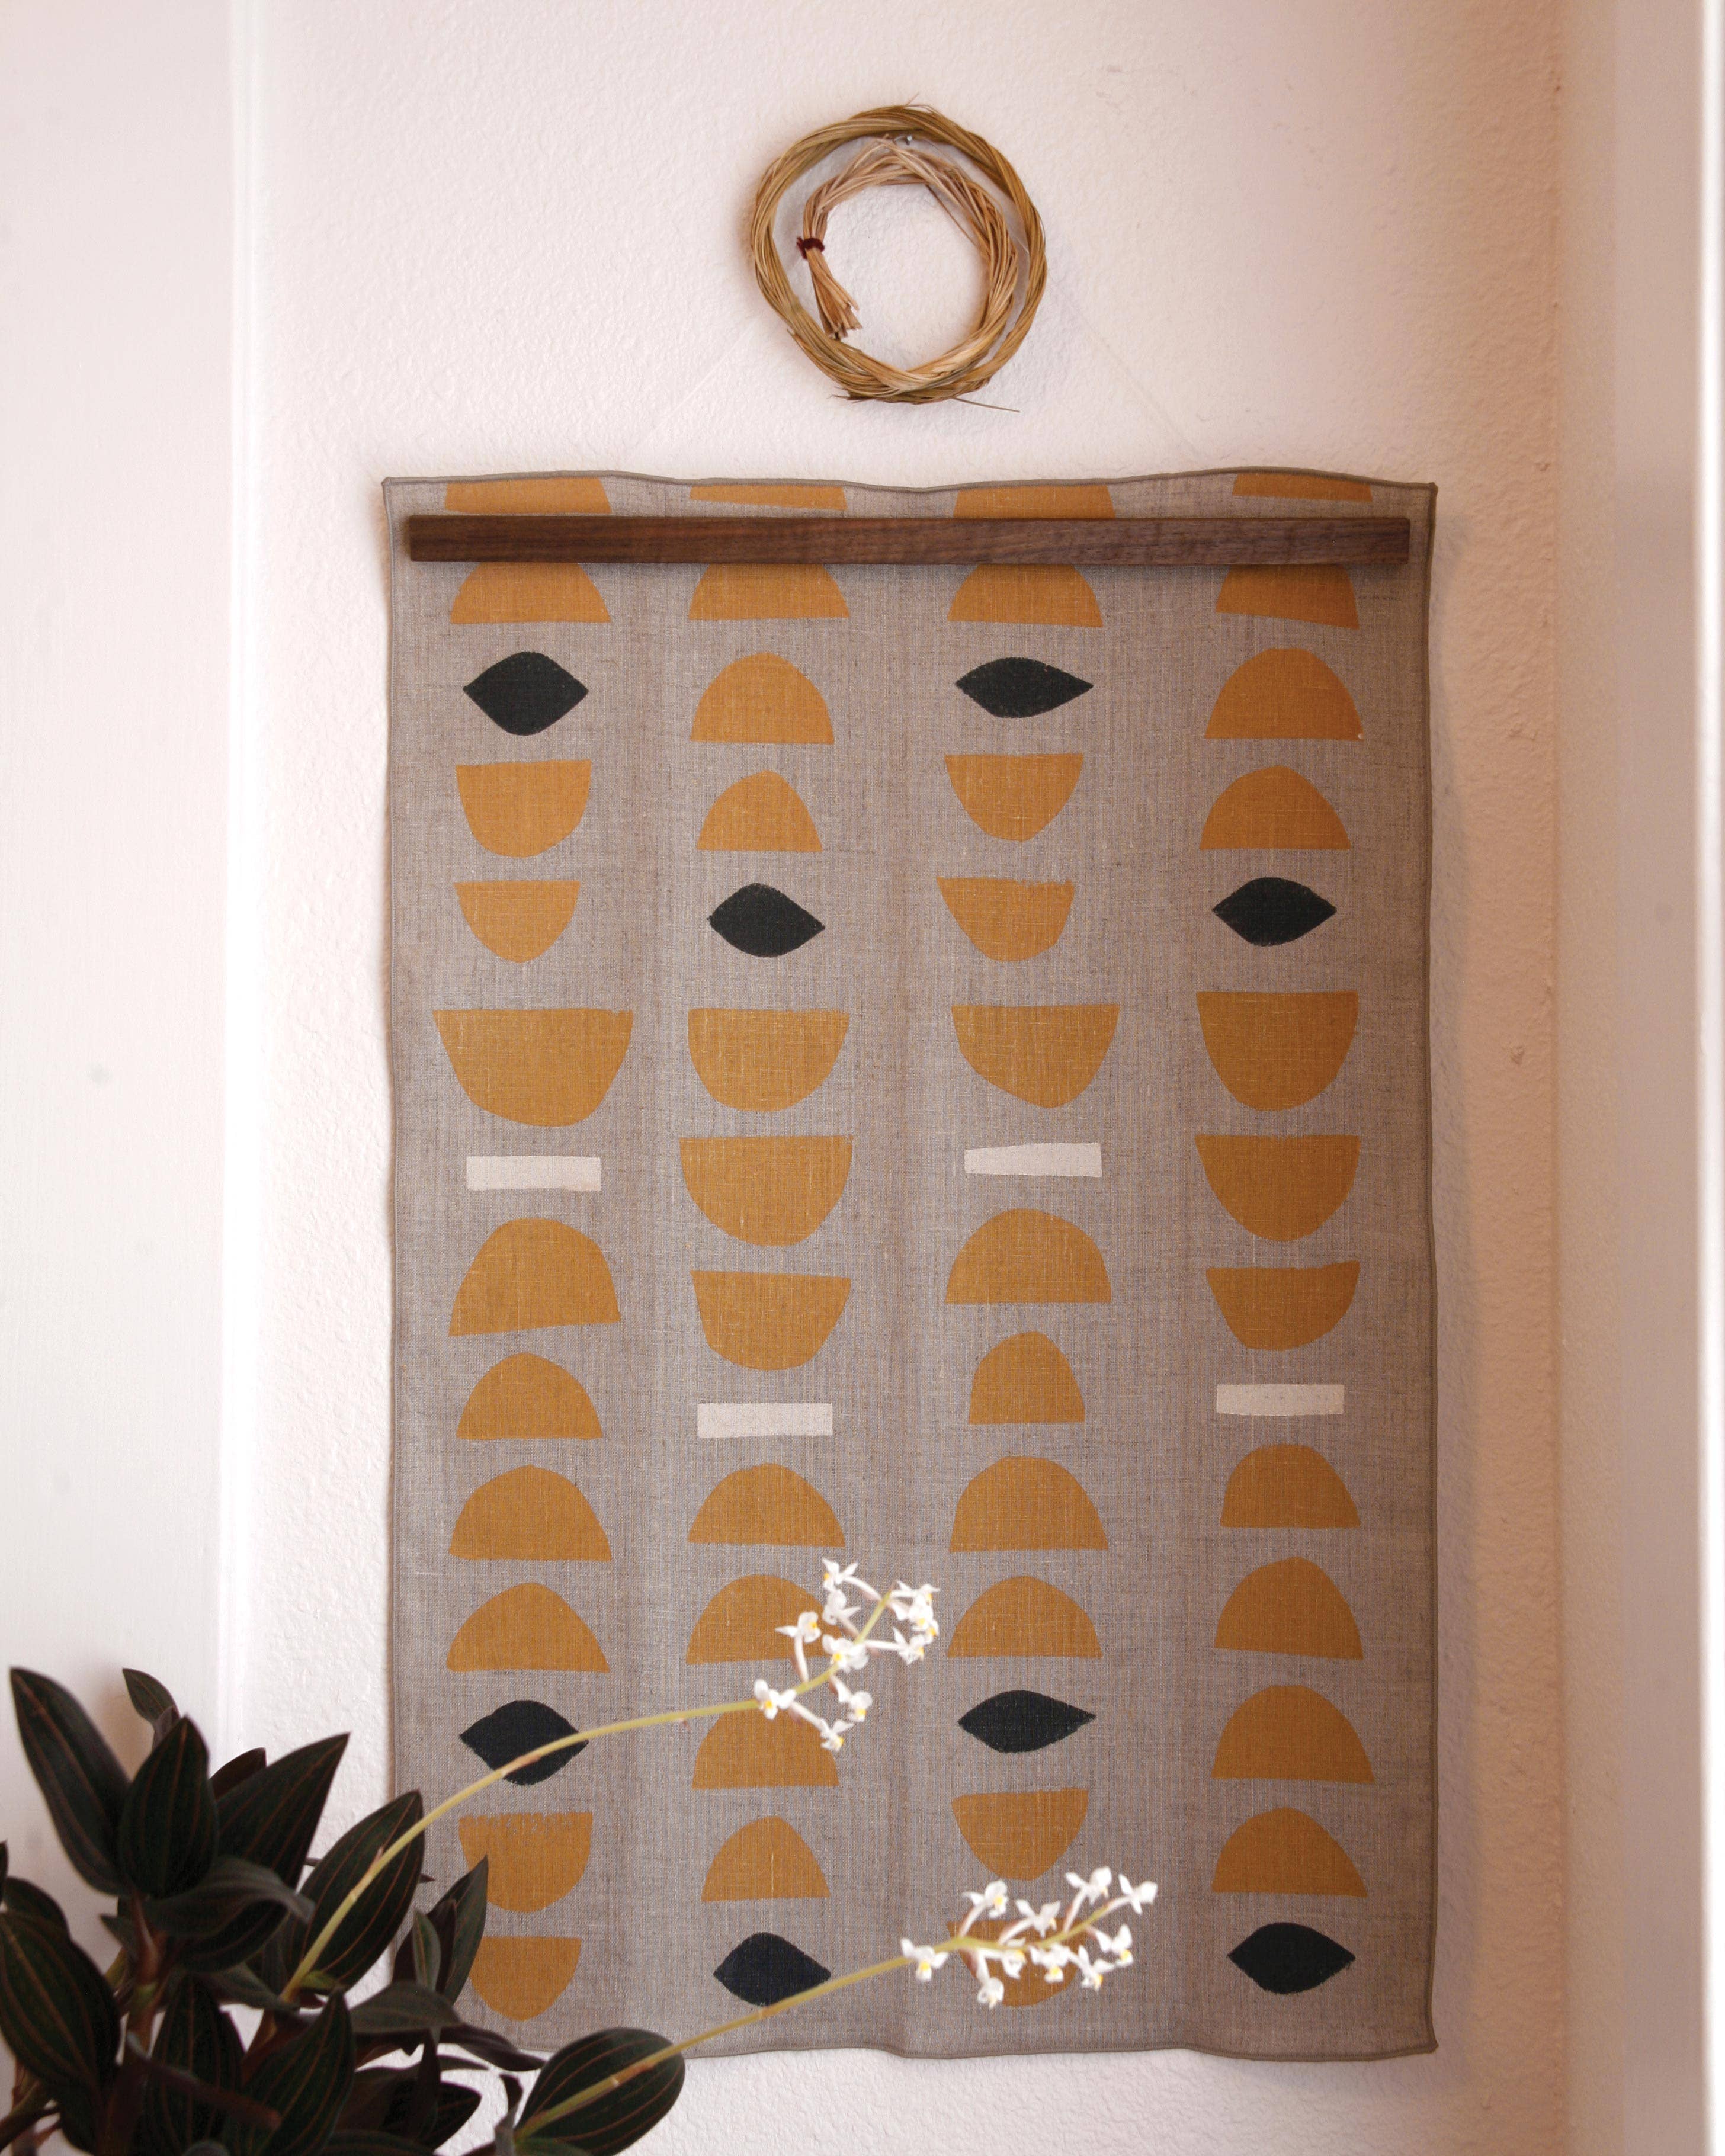 Willow Ship - &#39;Stacks&#39; Block Printed Linen Tea Towel, Ochre colorway